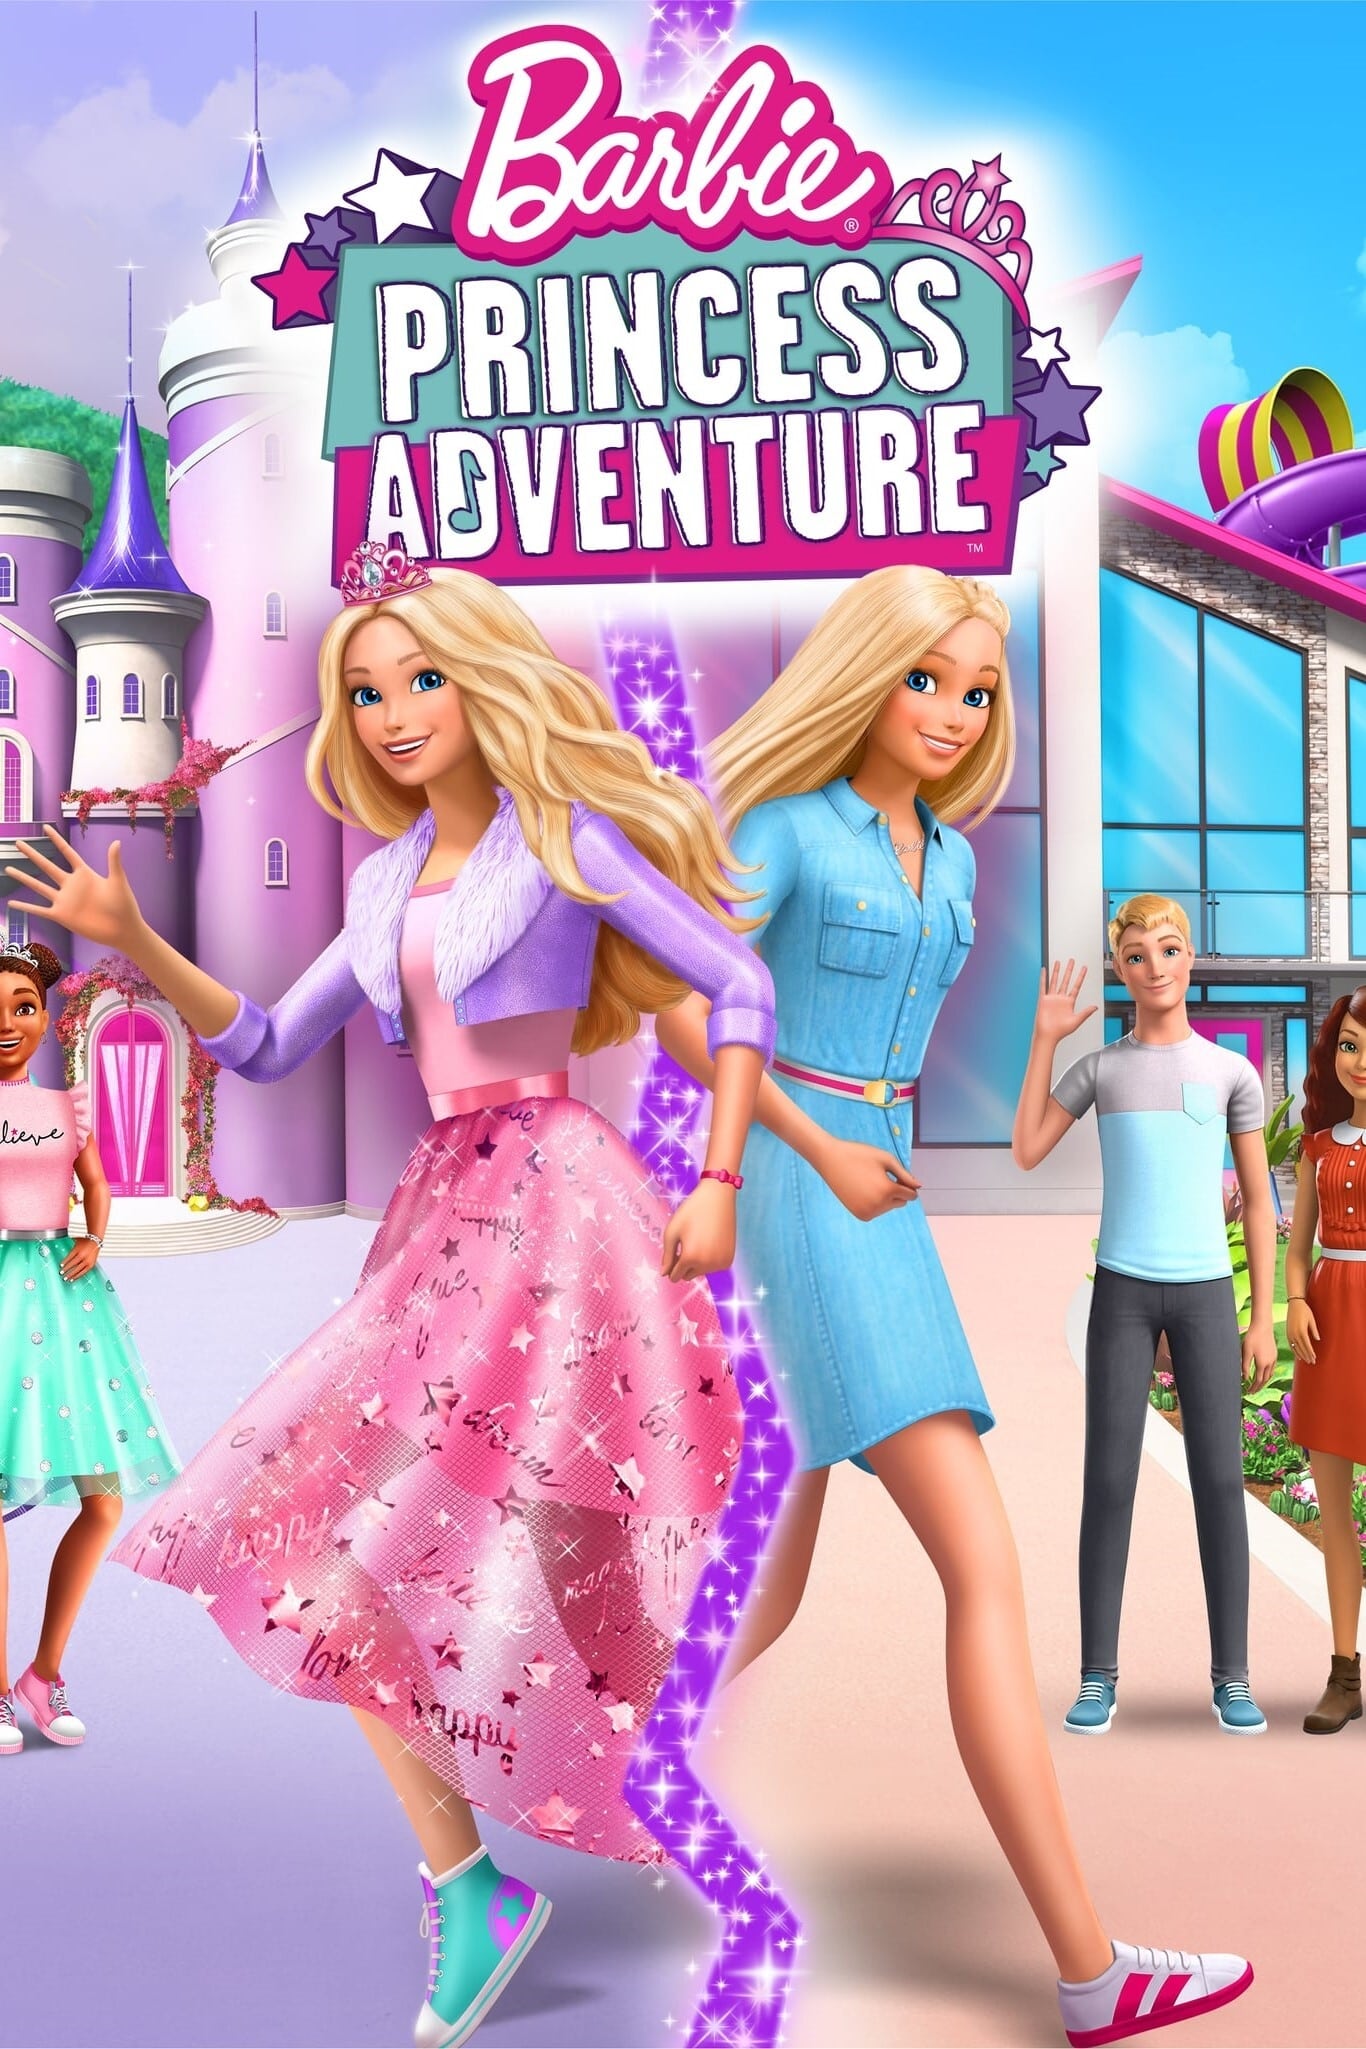 Traducción de Barbie: Princess Adventure Una aventura de princesas)